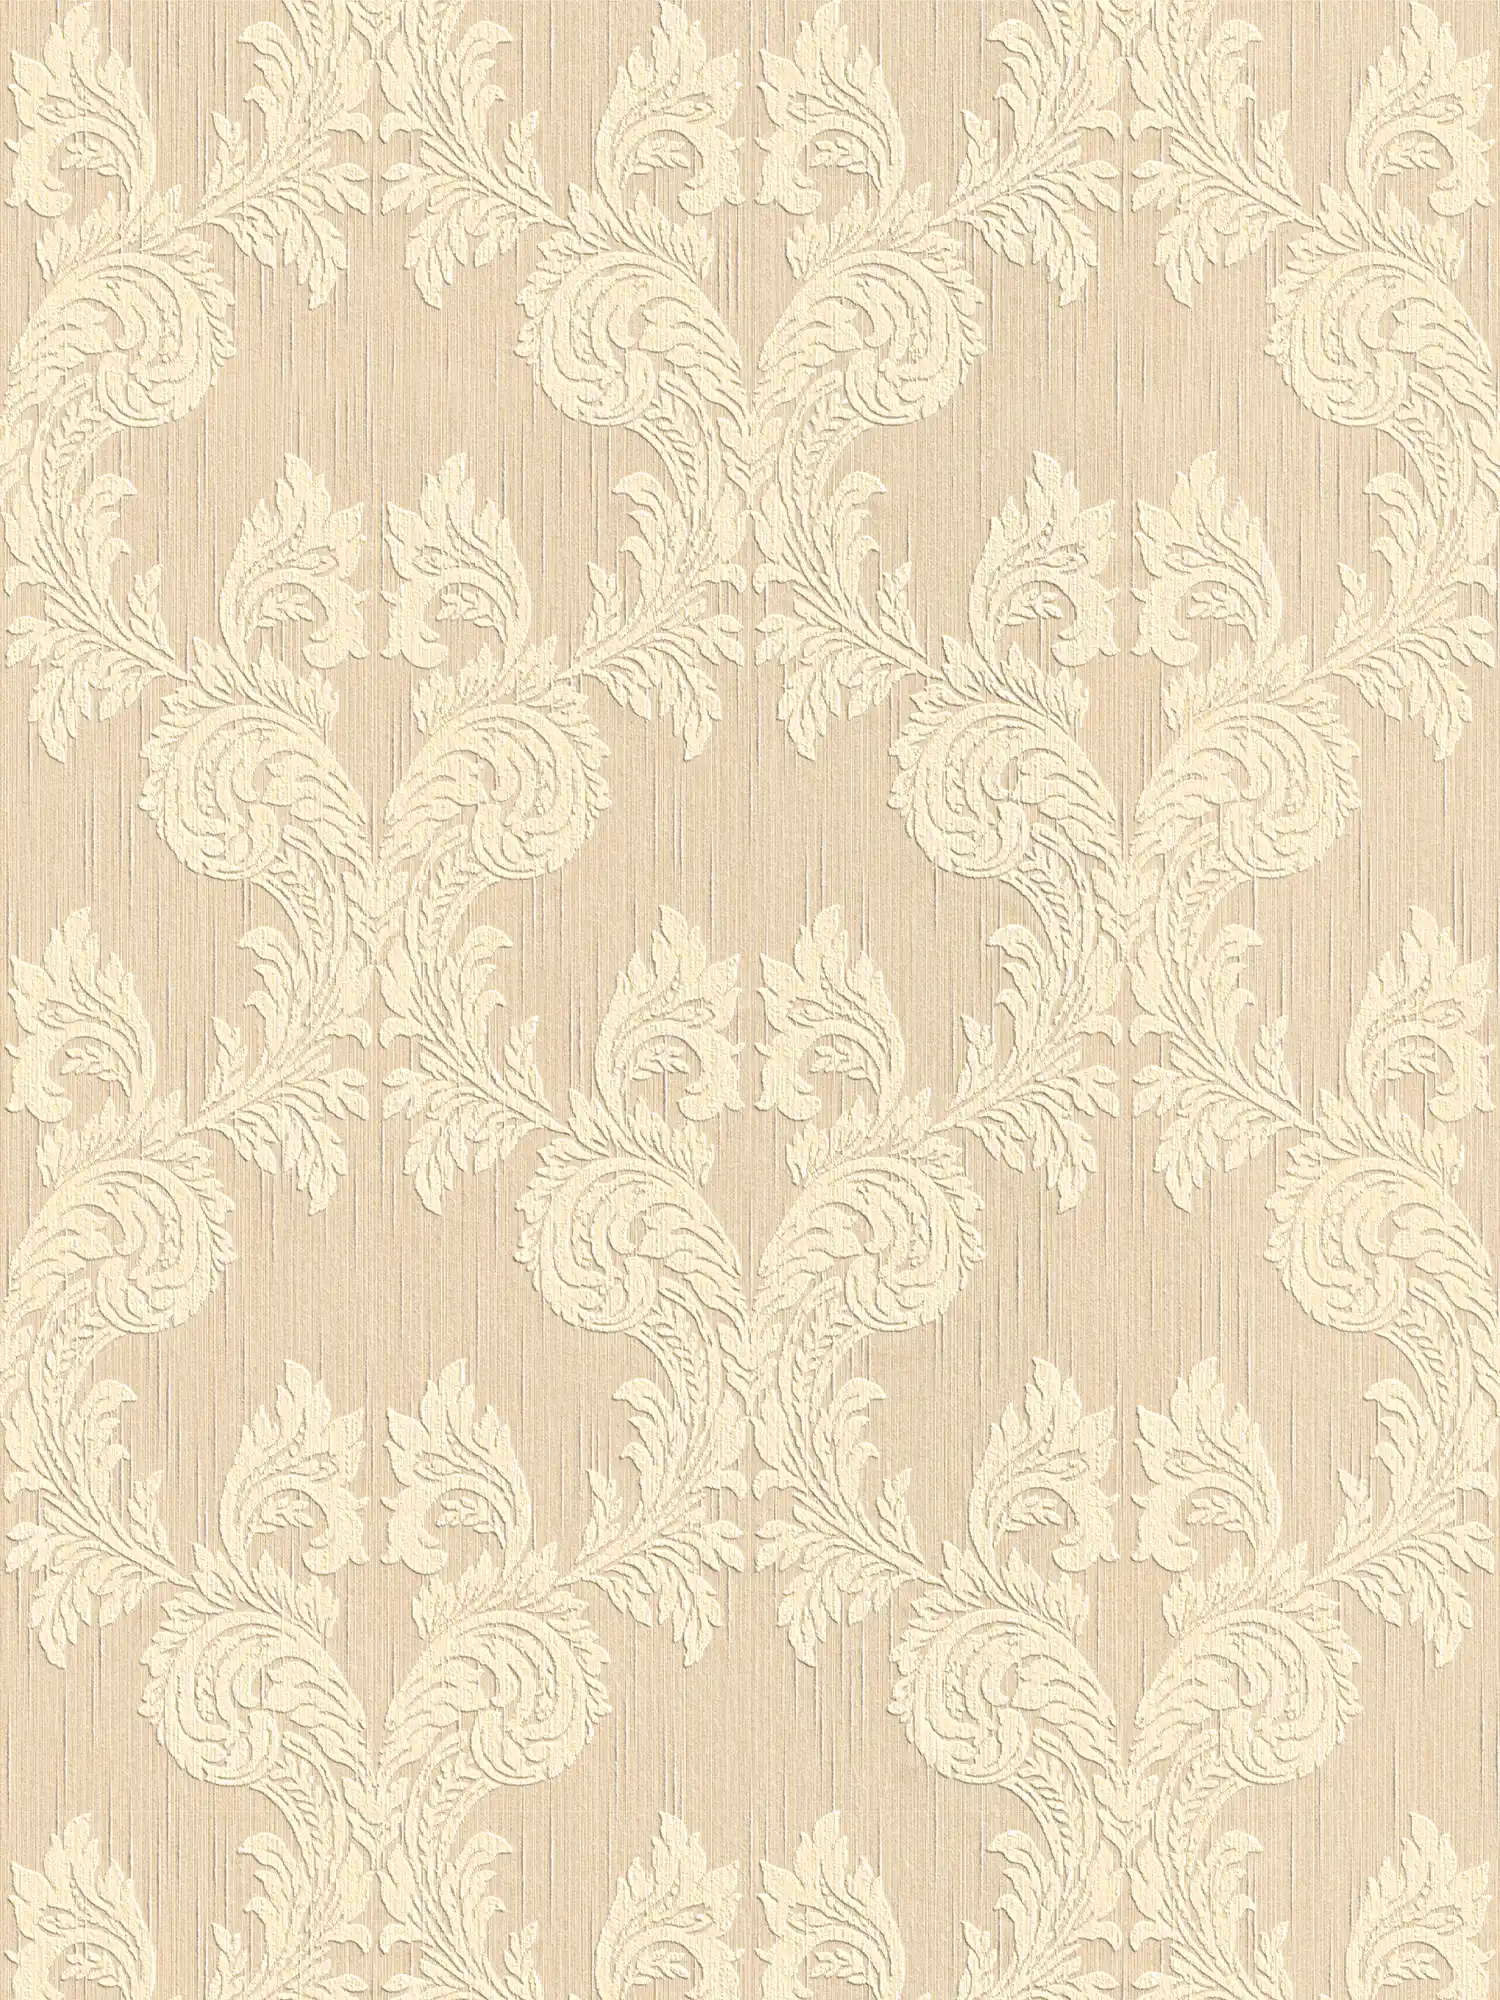 Papel pintado de aspecto textil con motivos ornamentales en estilo clásico - beige
